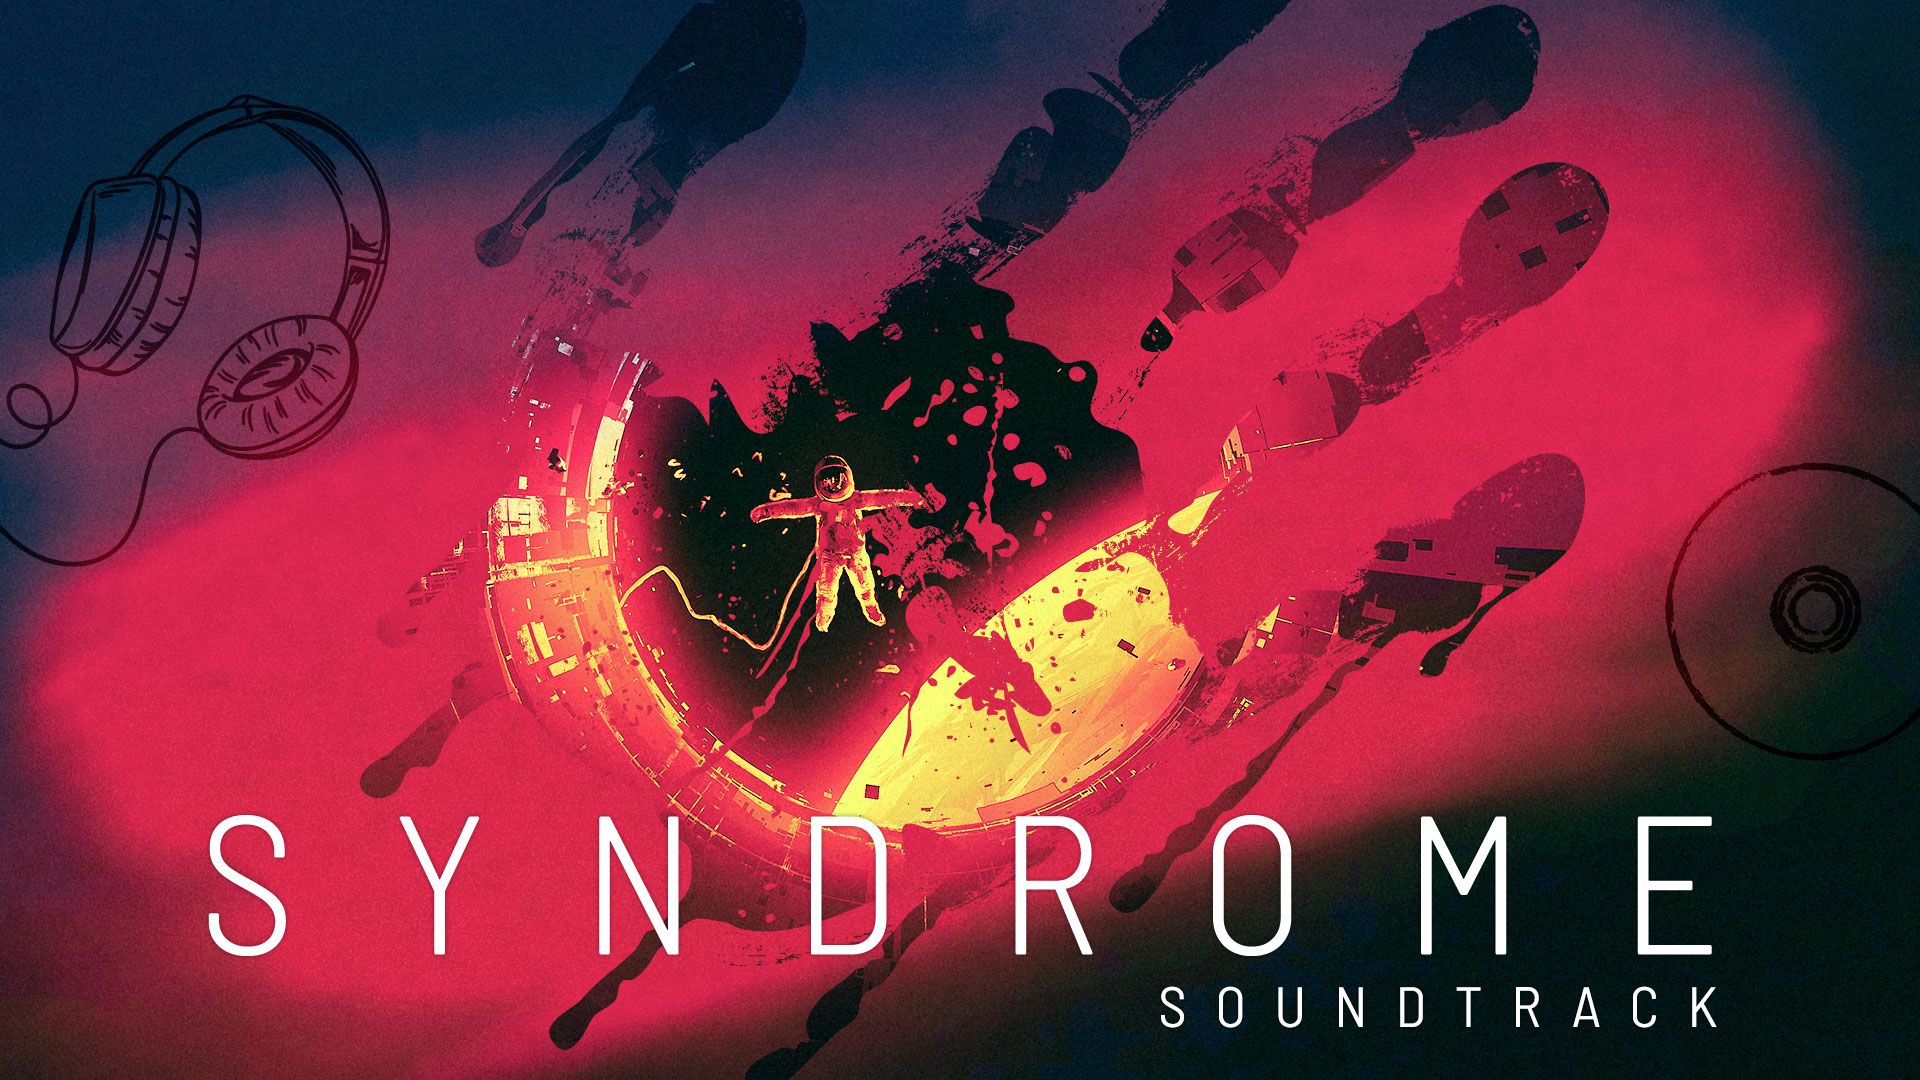 Syndrome Soundtrack